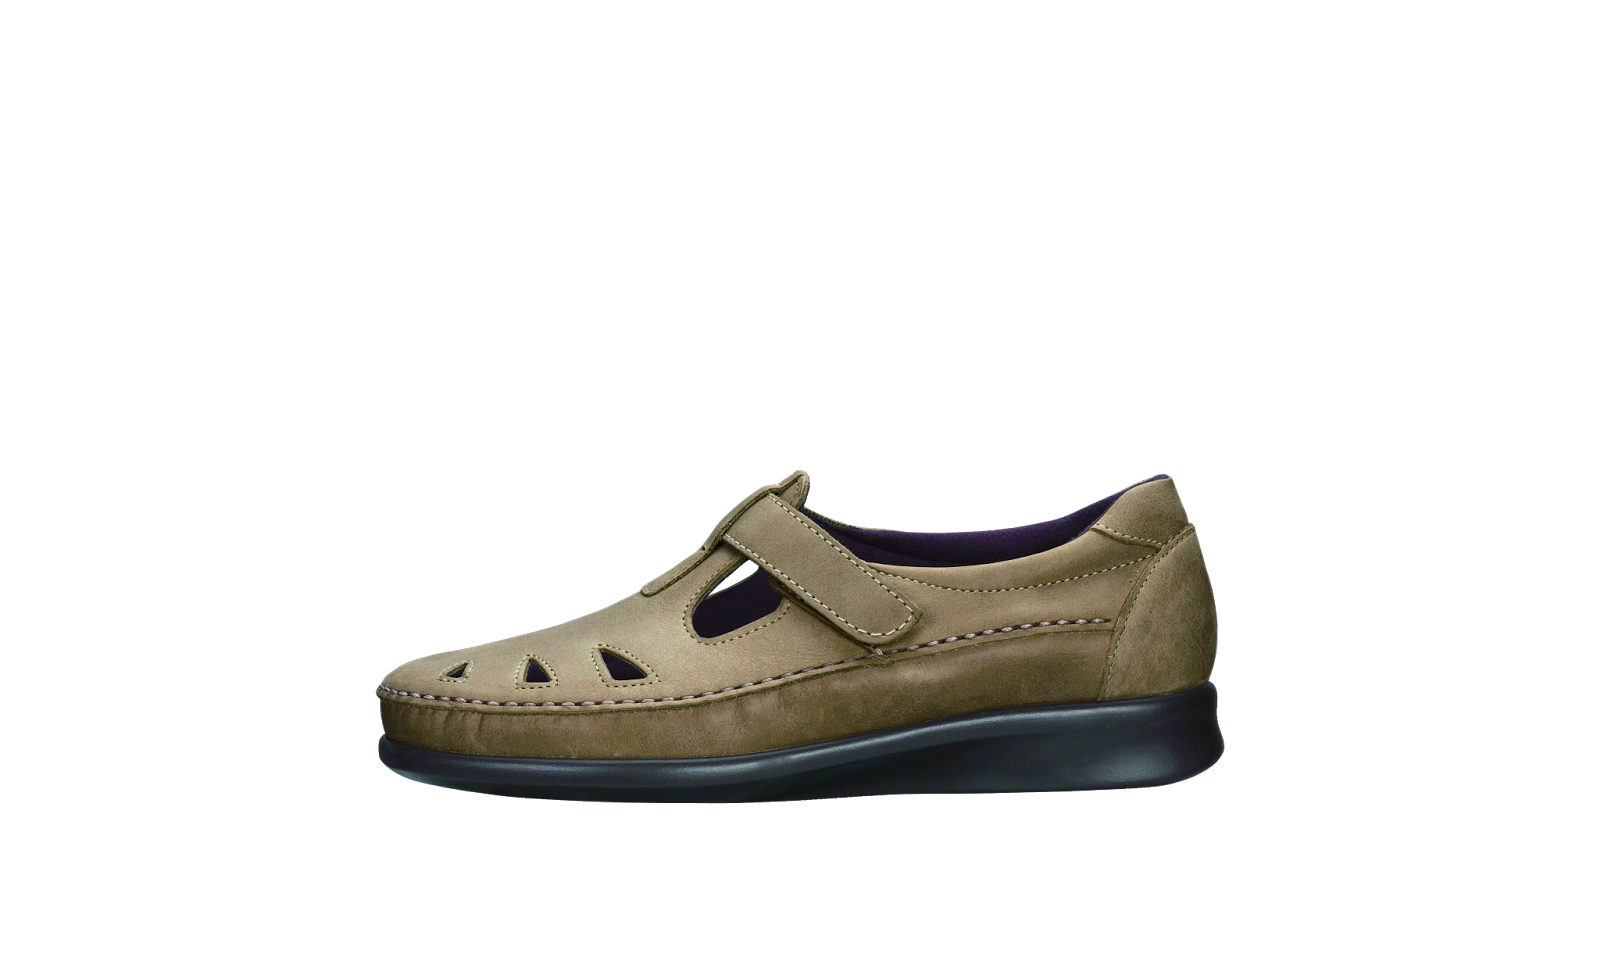 Ensor's Comfort Shoes - Betty's Blog: ROAMER for Women by SAS®